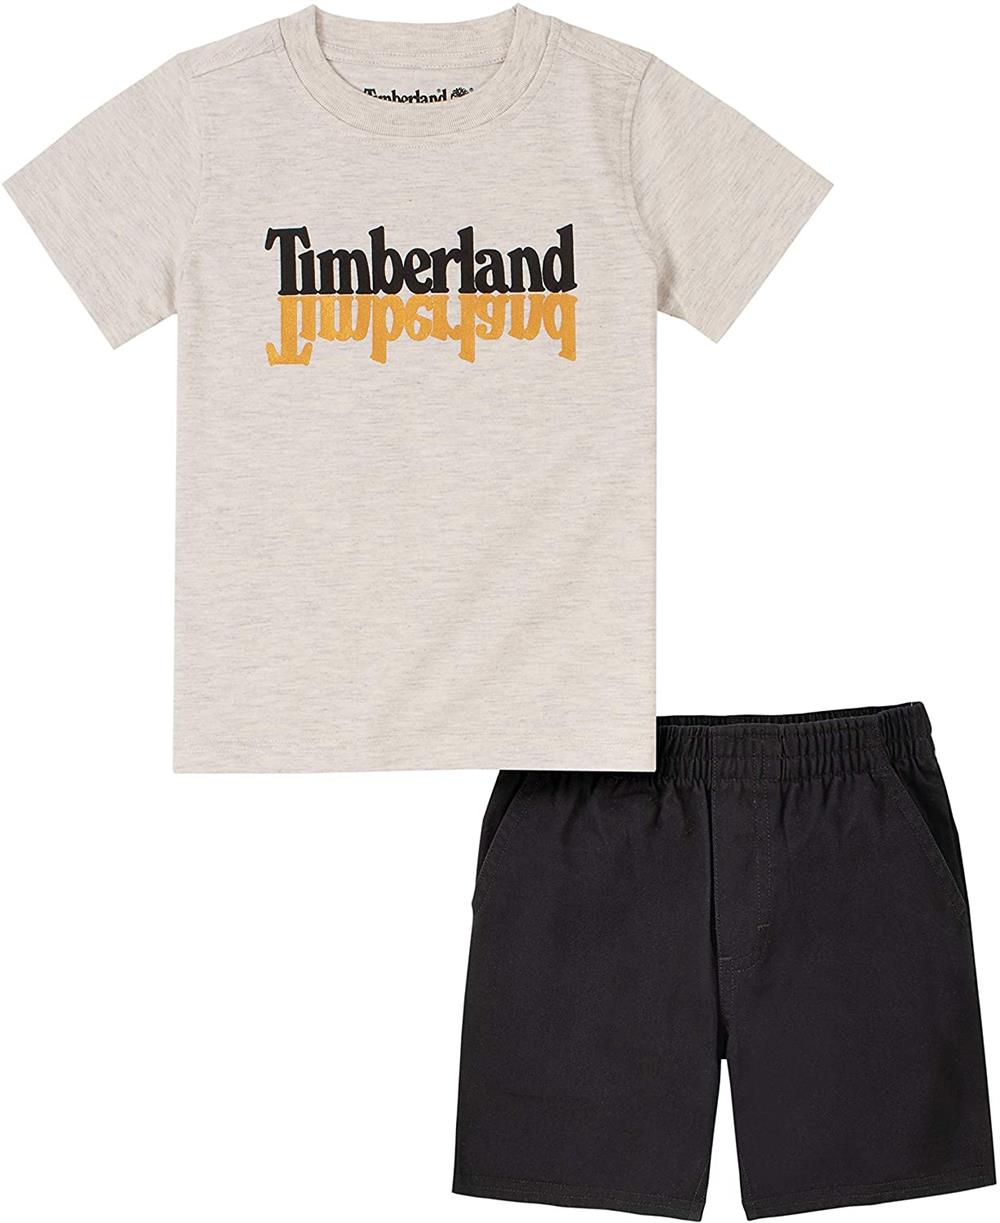 Timberland Boys 2T-4T T-Shirt Short Set